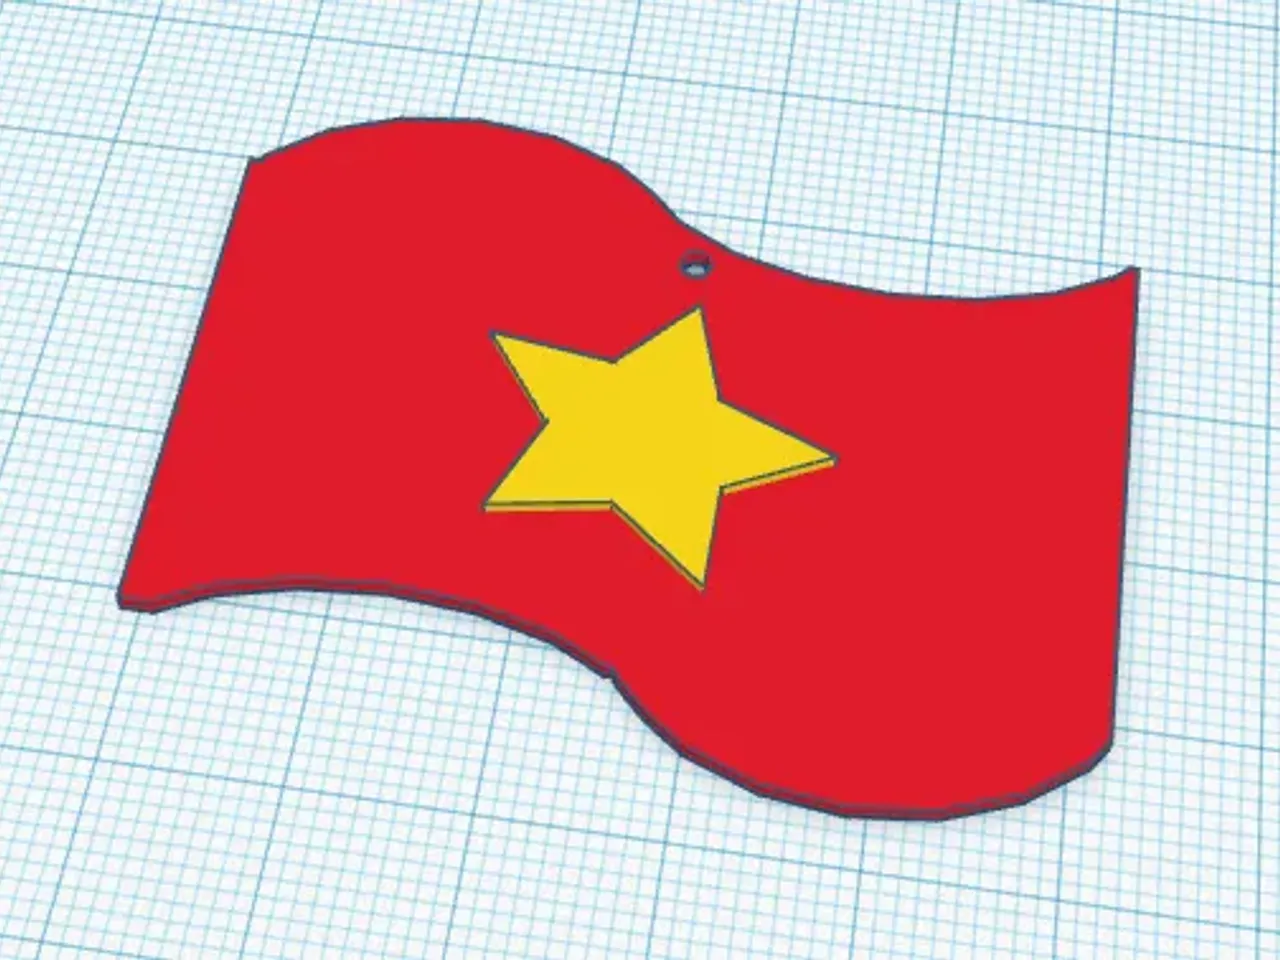 Mô hình cờ Việt Nam được chế tác với sự tinh tế và chính xác. Sản phẩm này là một món quà tuyệt vời để khoe sự tự hào về quốc gia của mình.